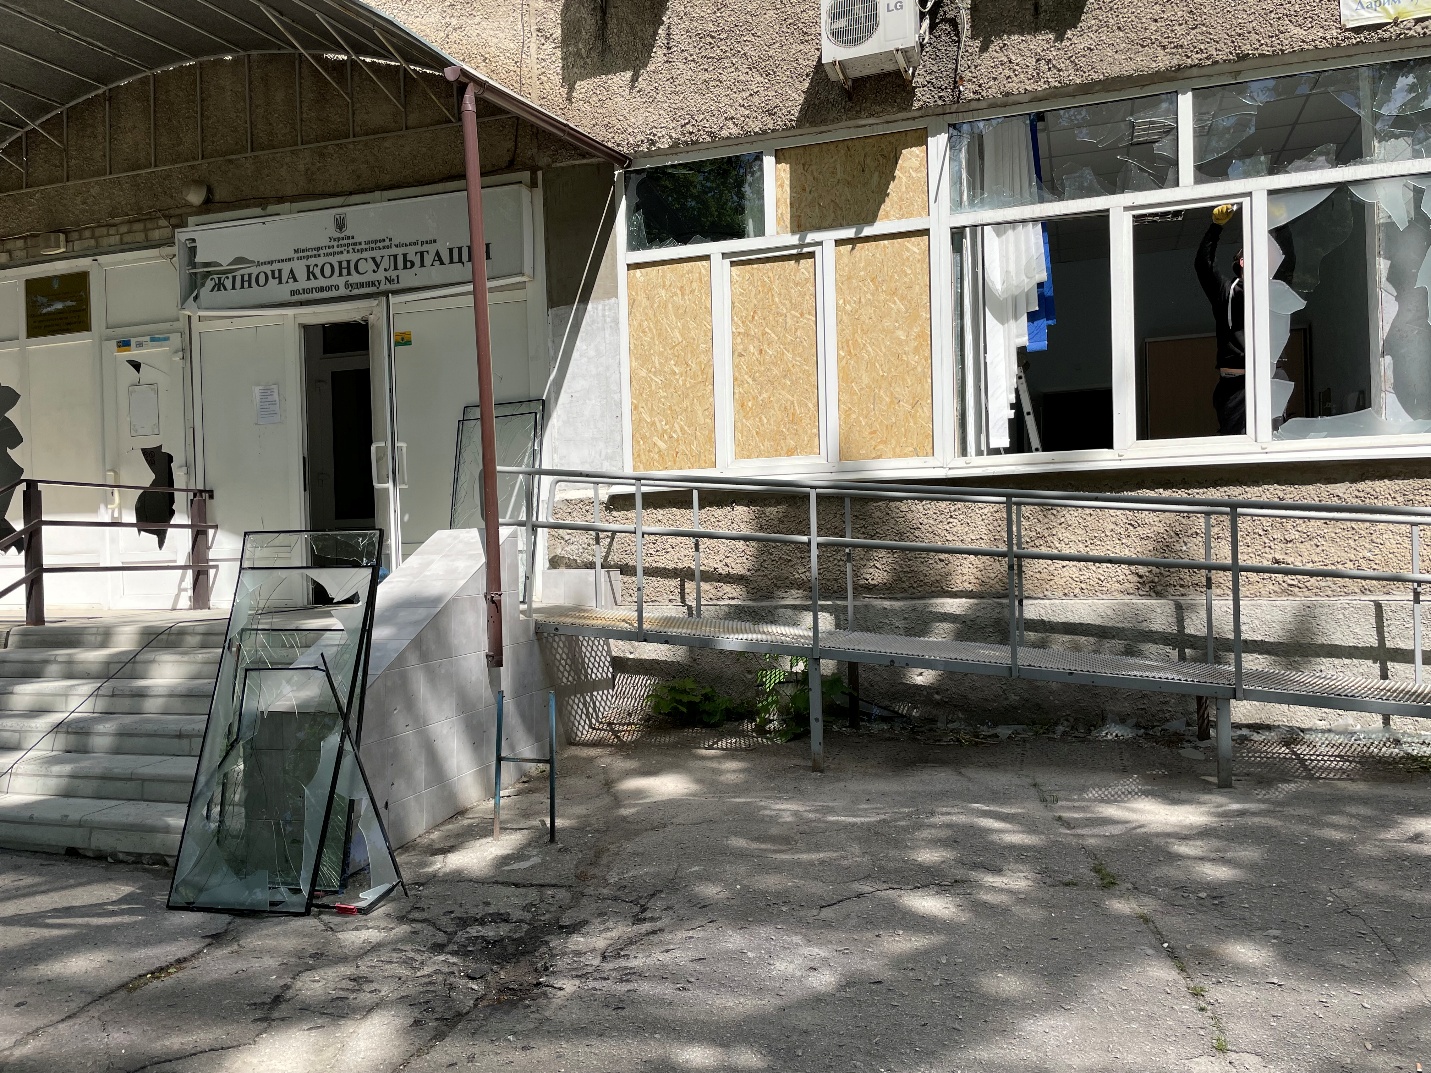 La marca del impacto dejado en el suelo después de la detonación de una submunición explosiva, una de al menos una docena en el área, frente a la clínica de servicios ambulatorios para mujeres del Hospital de Maternidad No. 1 de la Ciudad de Járkov, después de un ataque el 23 de mayo en un vecindario poblado en Járkov que dañó el hospital, 27 de mayo de 2022.